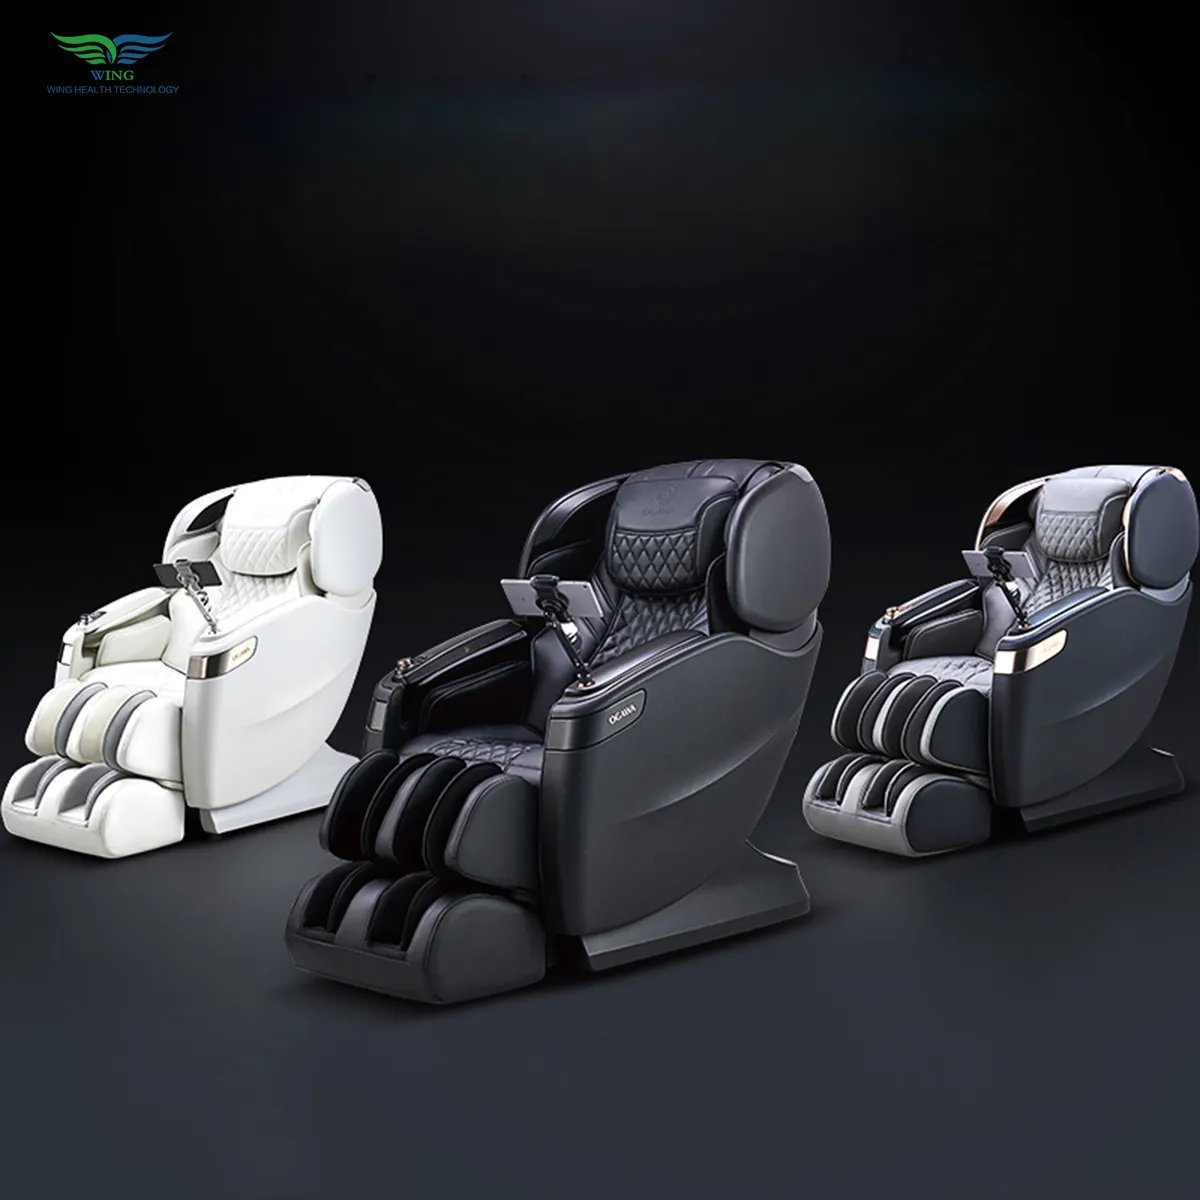 OGAWA Core technology real massage Zero Gravity Shiatsu reclinabile sedia da massaggio per tutto il corpo pressione dell'aria 4D AI Robot da massaggio